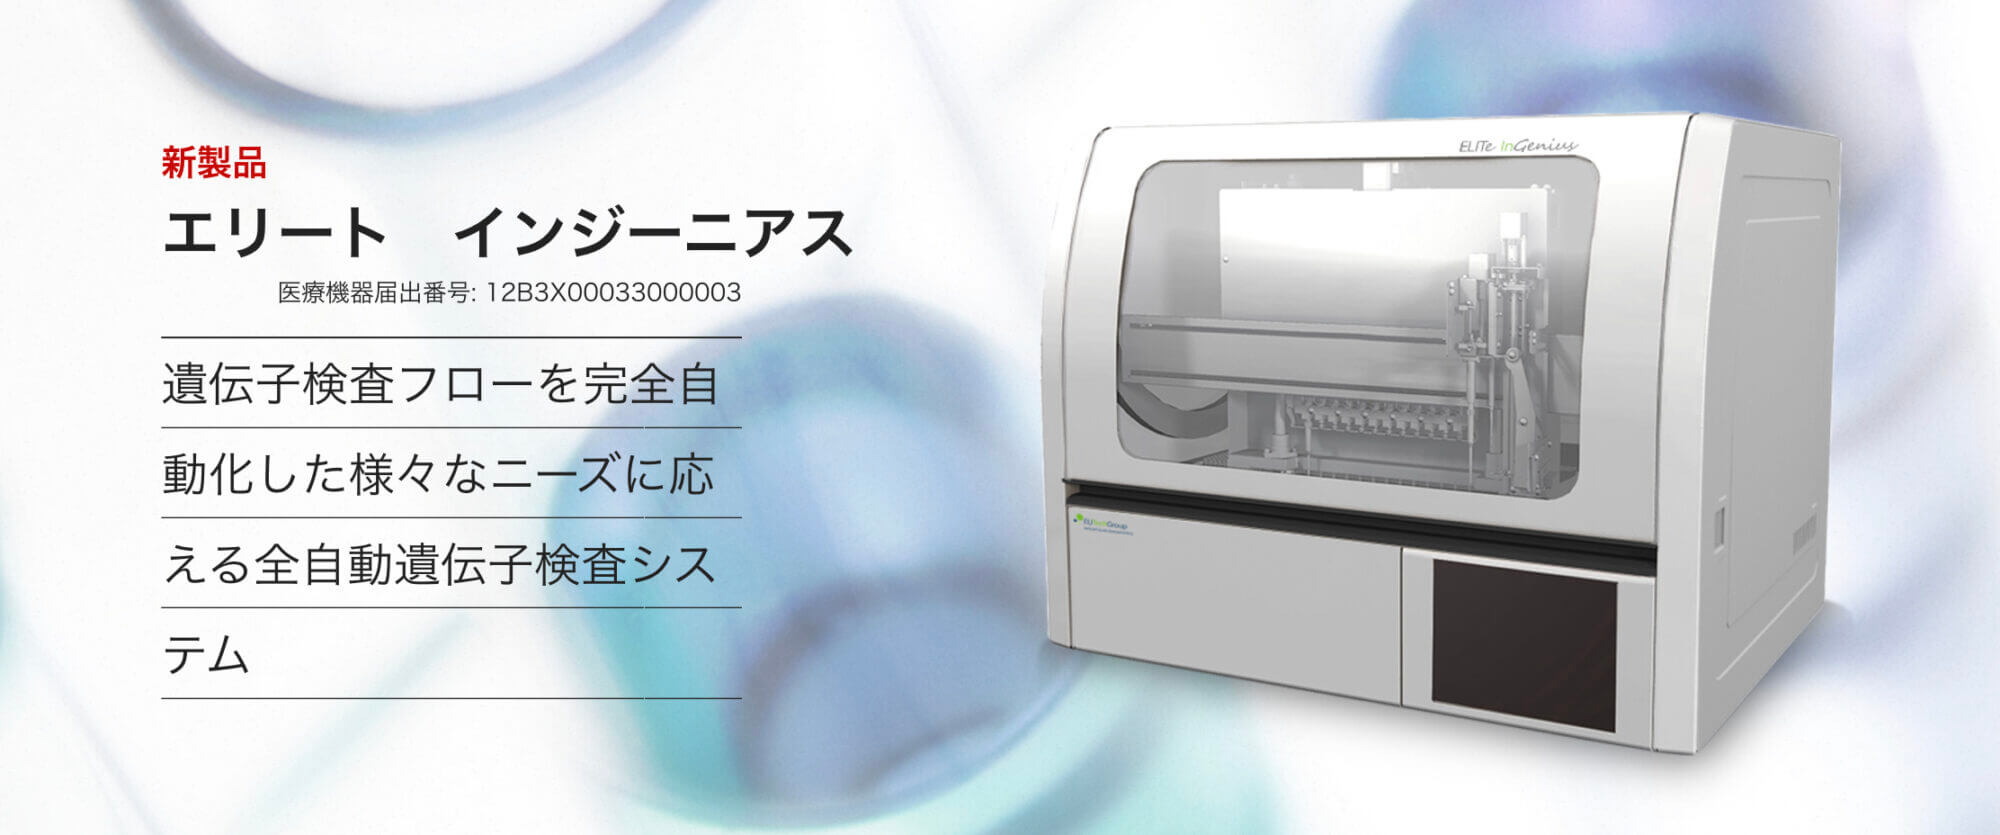 COVID-19関連 — PCR全自動検査装置: エリートインジーニアス –  フランスから感謝状が送られたとい素晴らしい装置 – Precision System Science社、は日本の企業です.でも、装置だけでは測定はできない [2020/11/21] ID20650